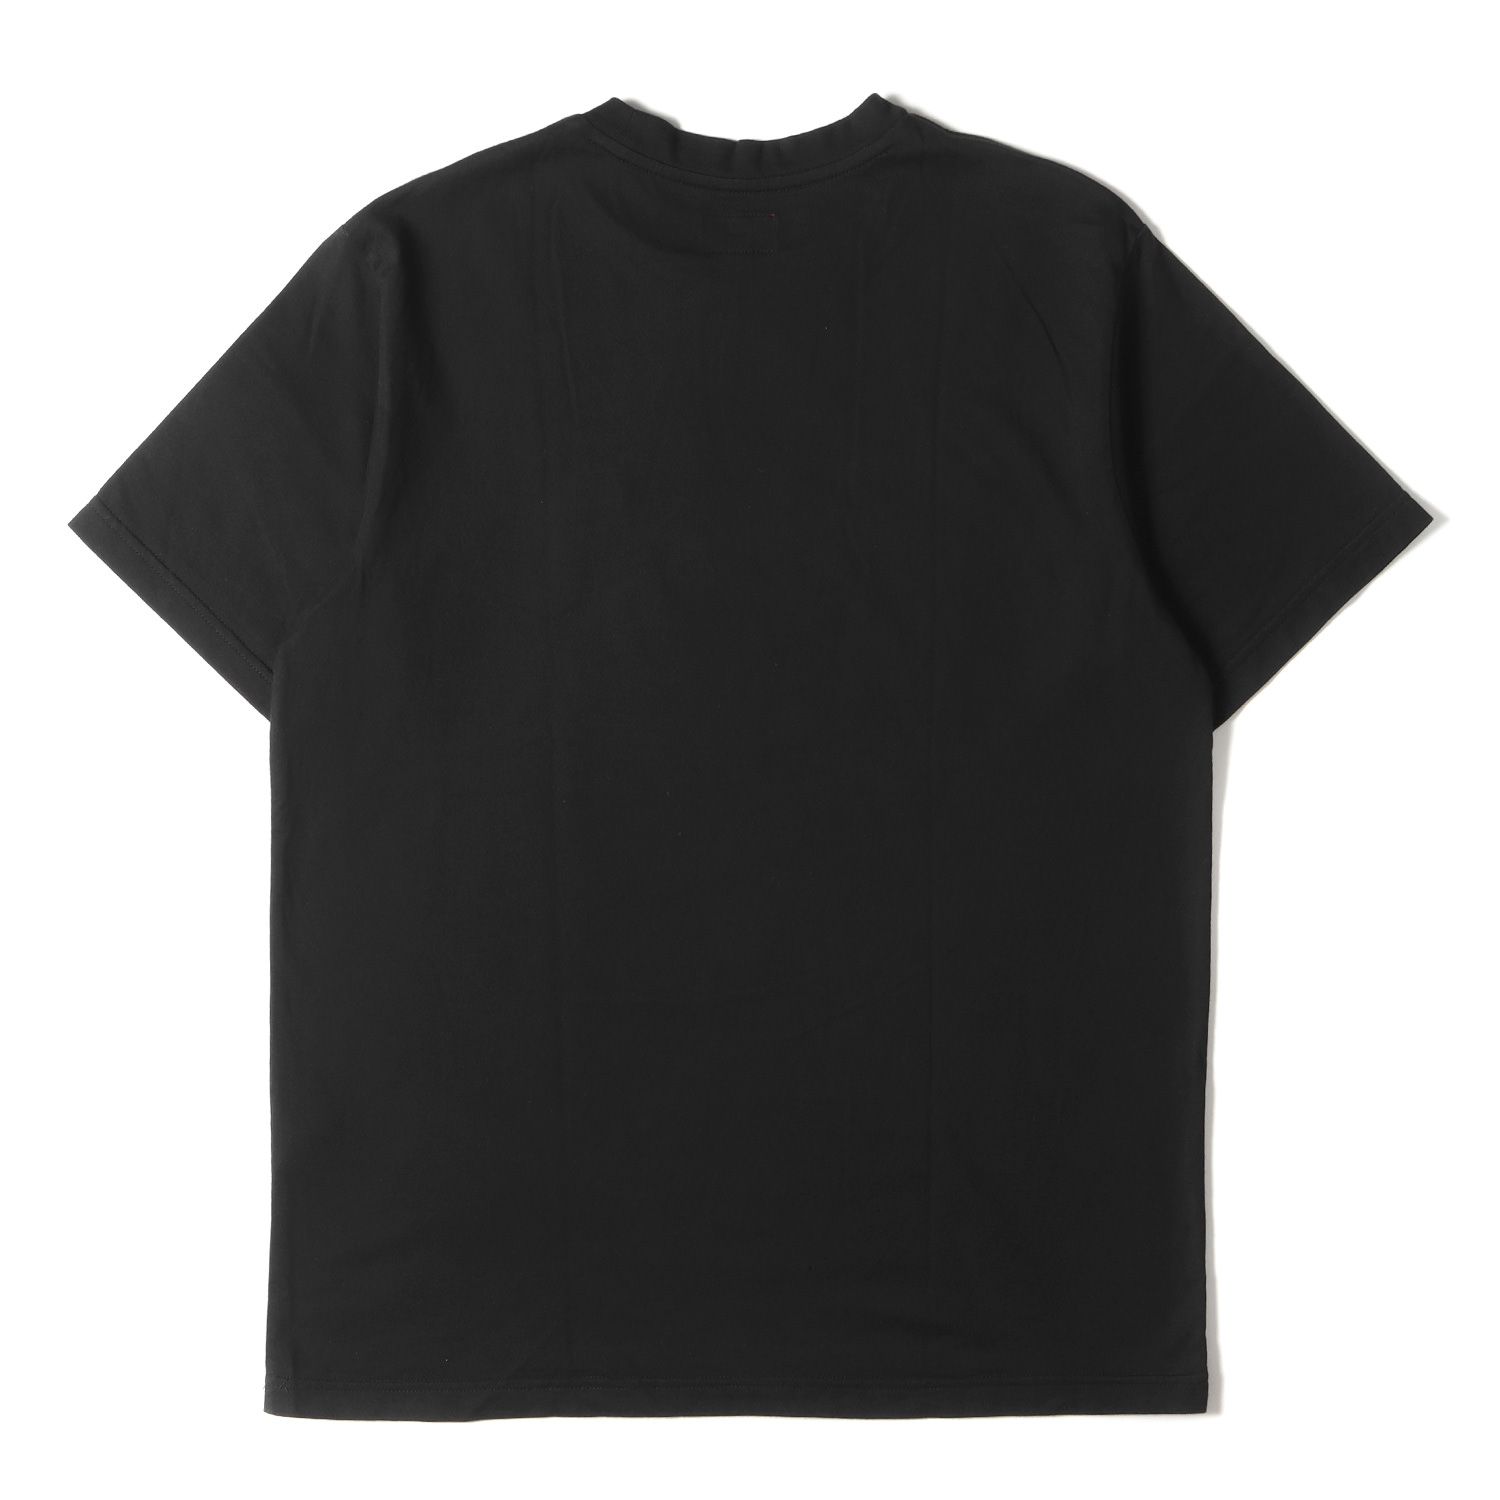 Supreme シュプリーム Tシャツ サイズ:S スモールボックスロゴ クルーネック 半袖 Tシャツ Small Box Tee 18SS ブラック  黒 トップス カットソー box logo ストリート ブランド - メルカリ